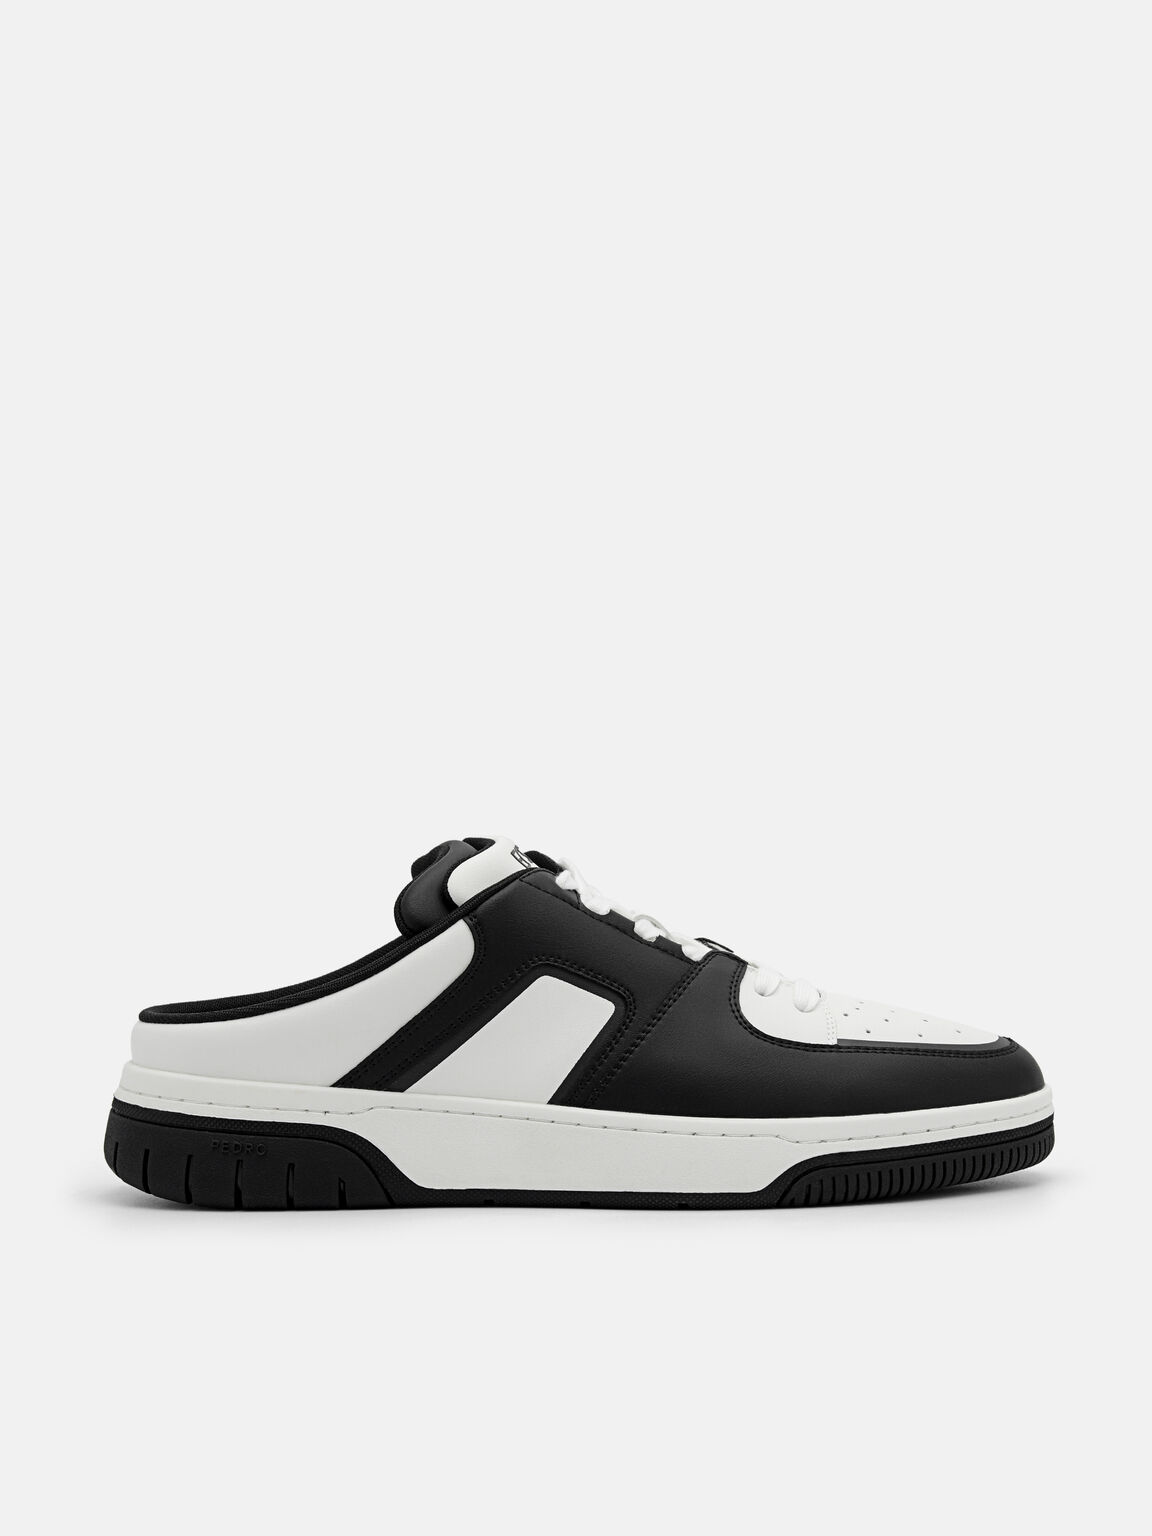 EOS Slip-On Sneakers, Black